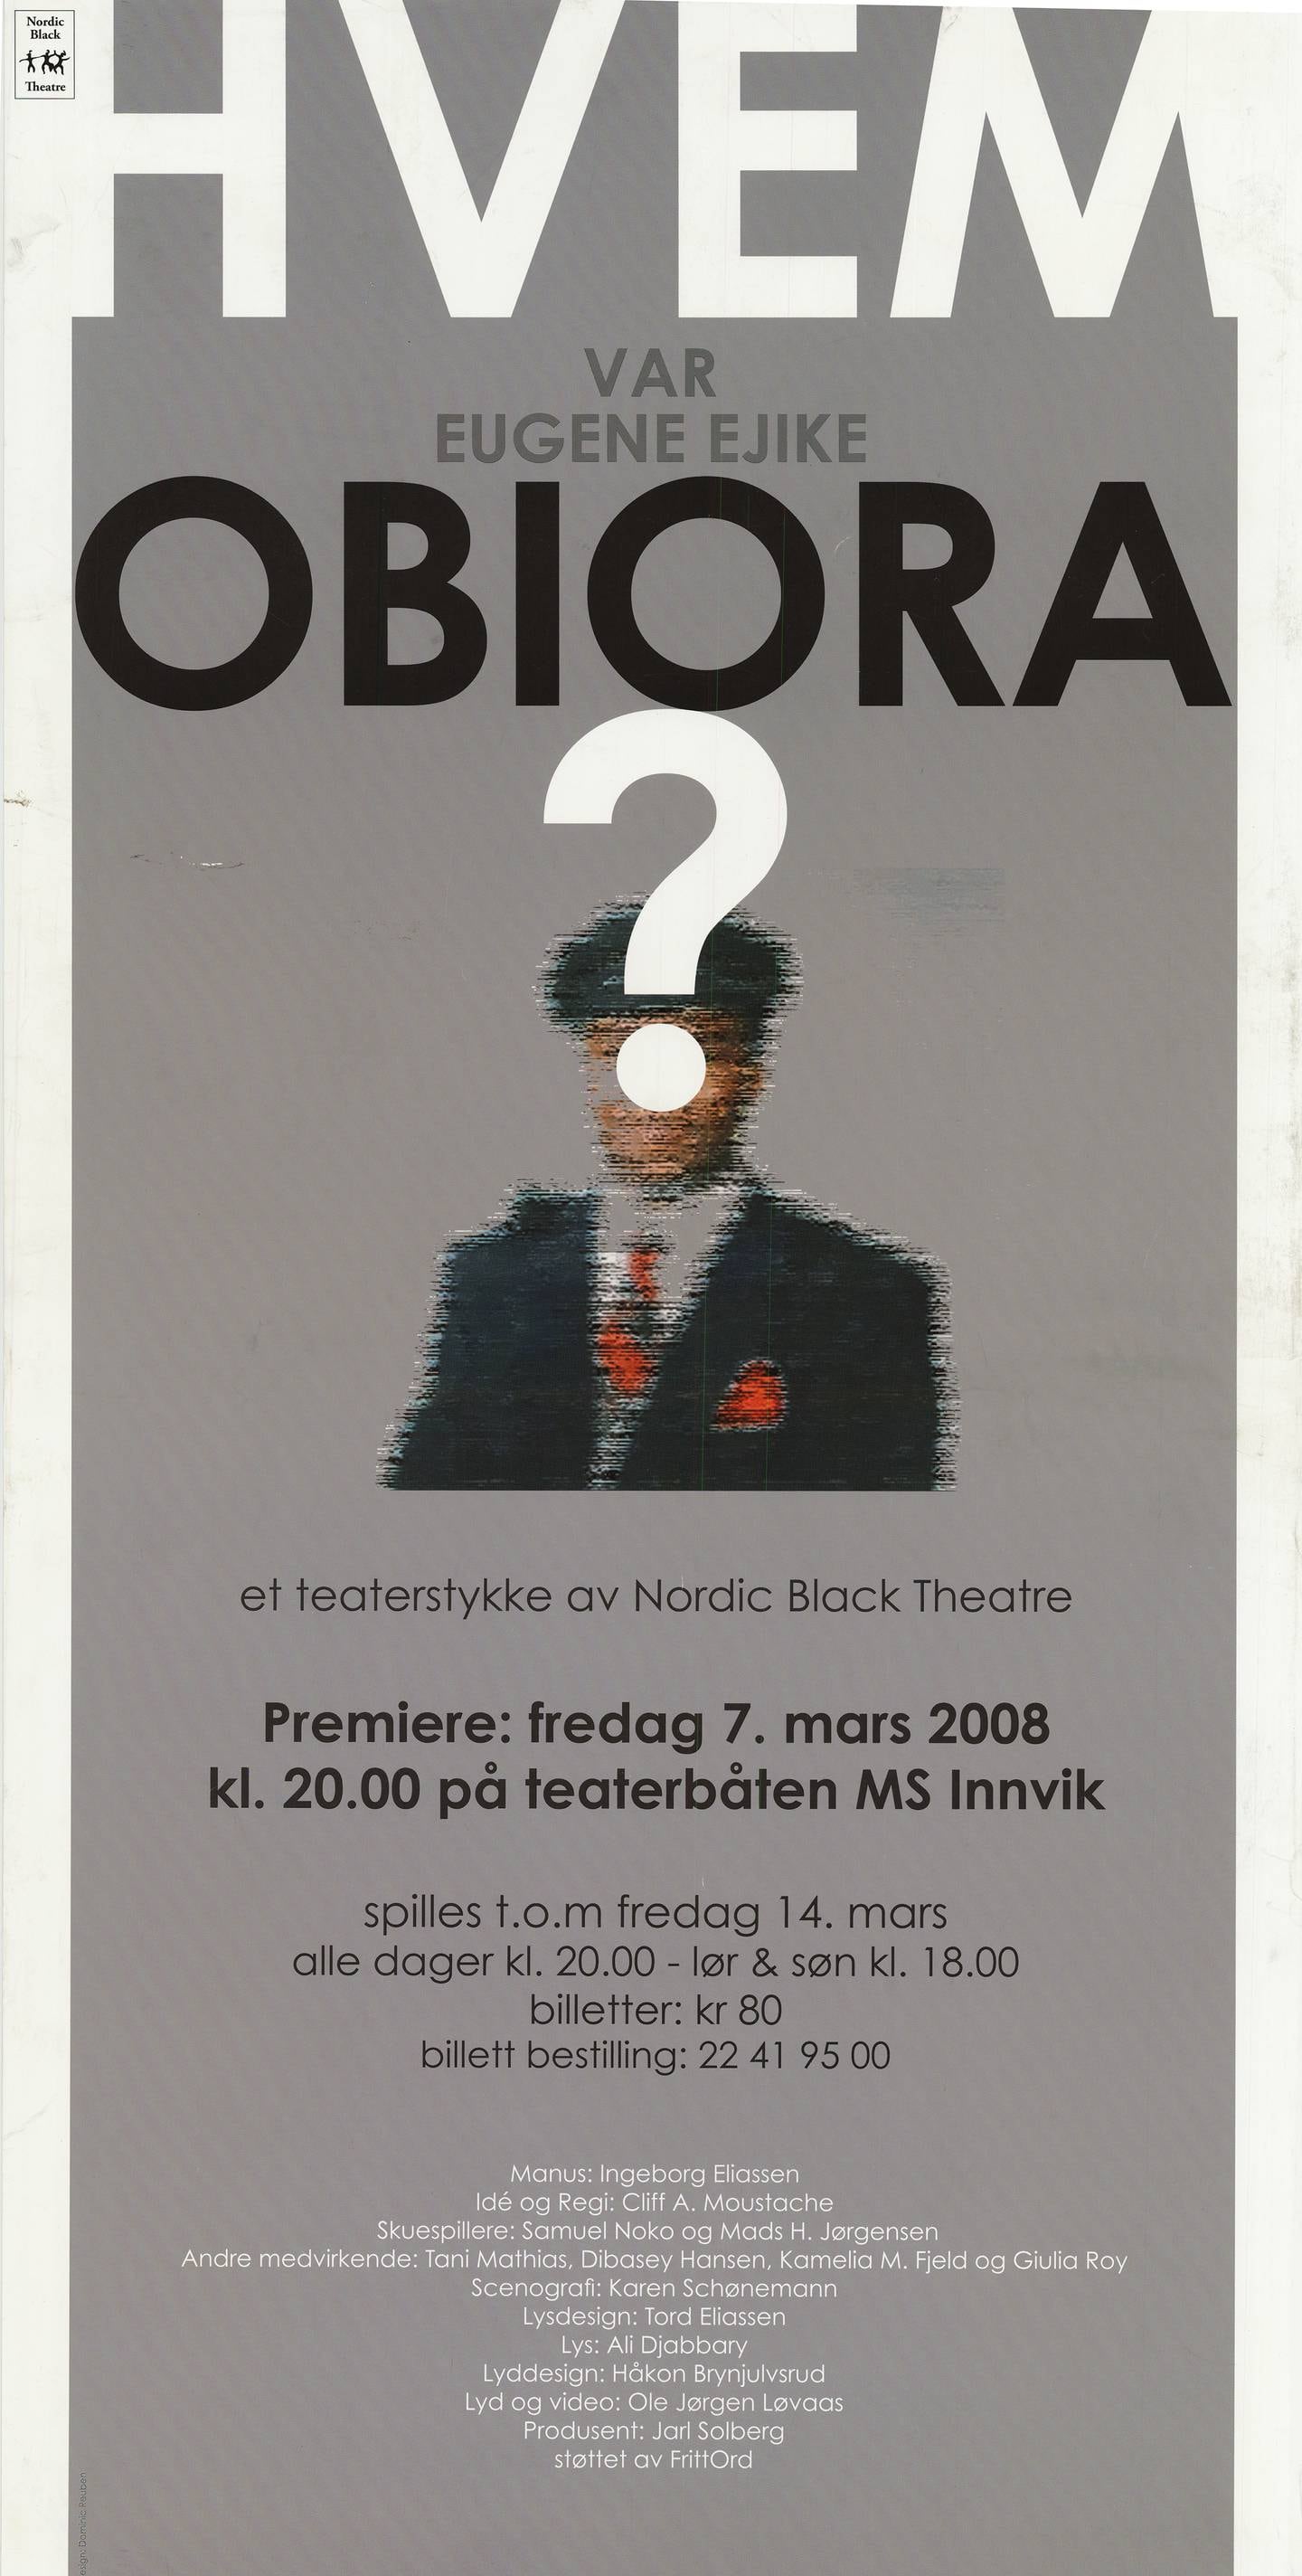 Plakat for forestillingen «Hvem var Eugene Ejike Obiora?» med et utydelig bilde av overkroppen til en person med et stort spørsmålstegn foran ansiktet.